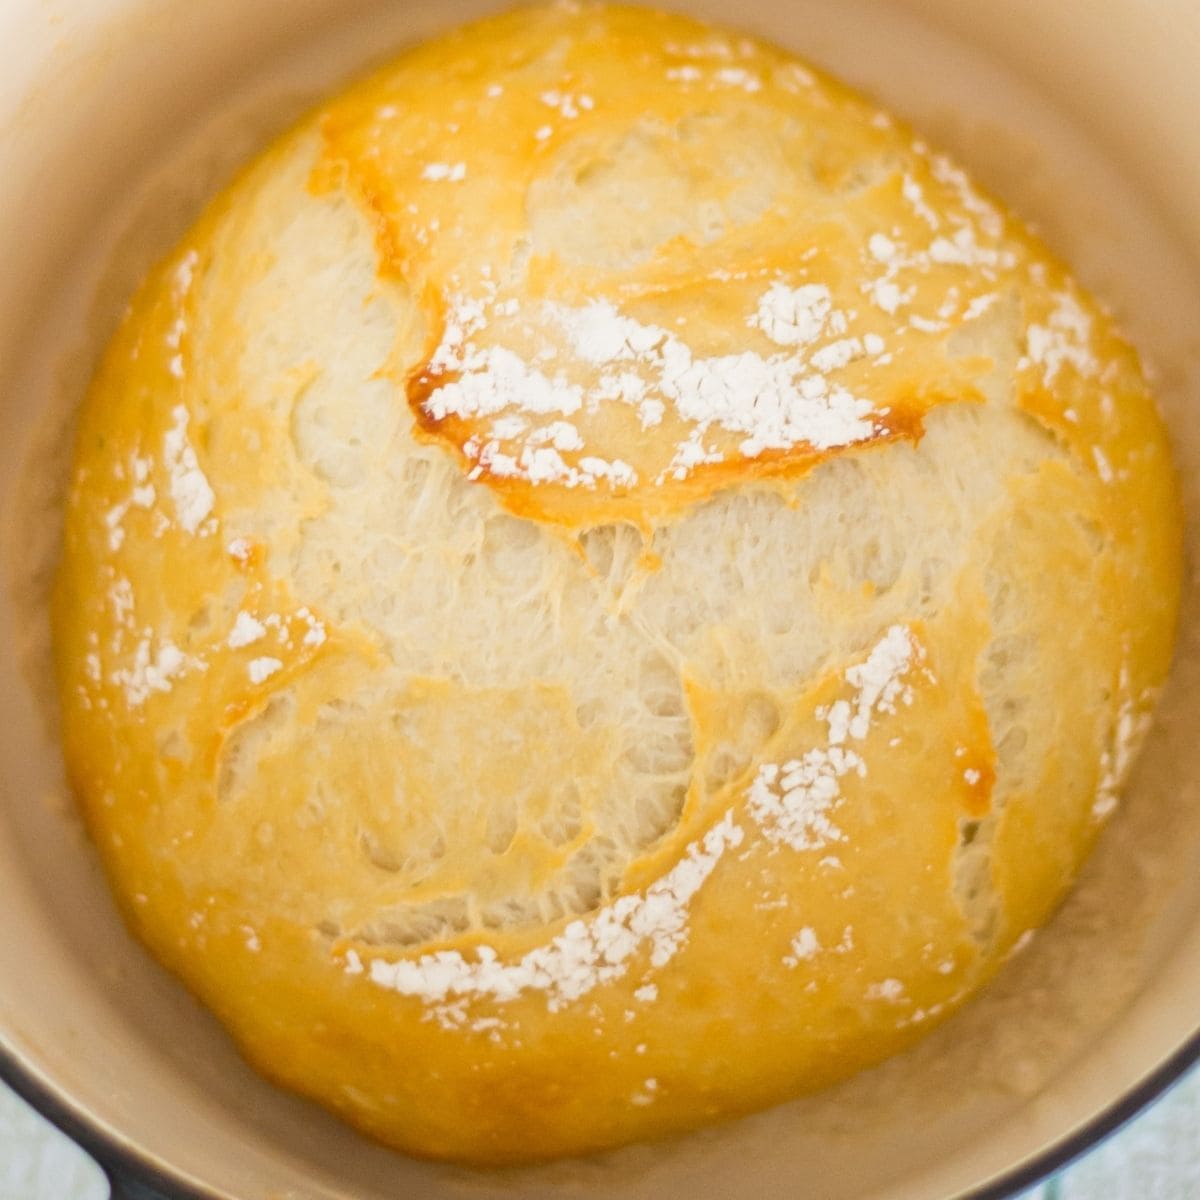 https://flouronmyface.com/wp-content/uploads/2021/02/no-knead-5-minute-artisan-bread.jpg